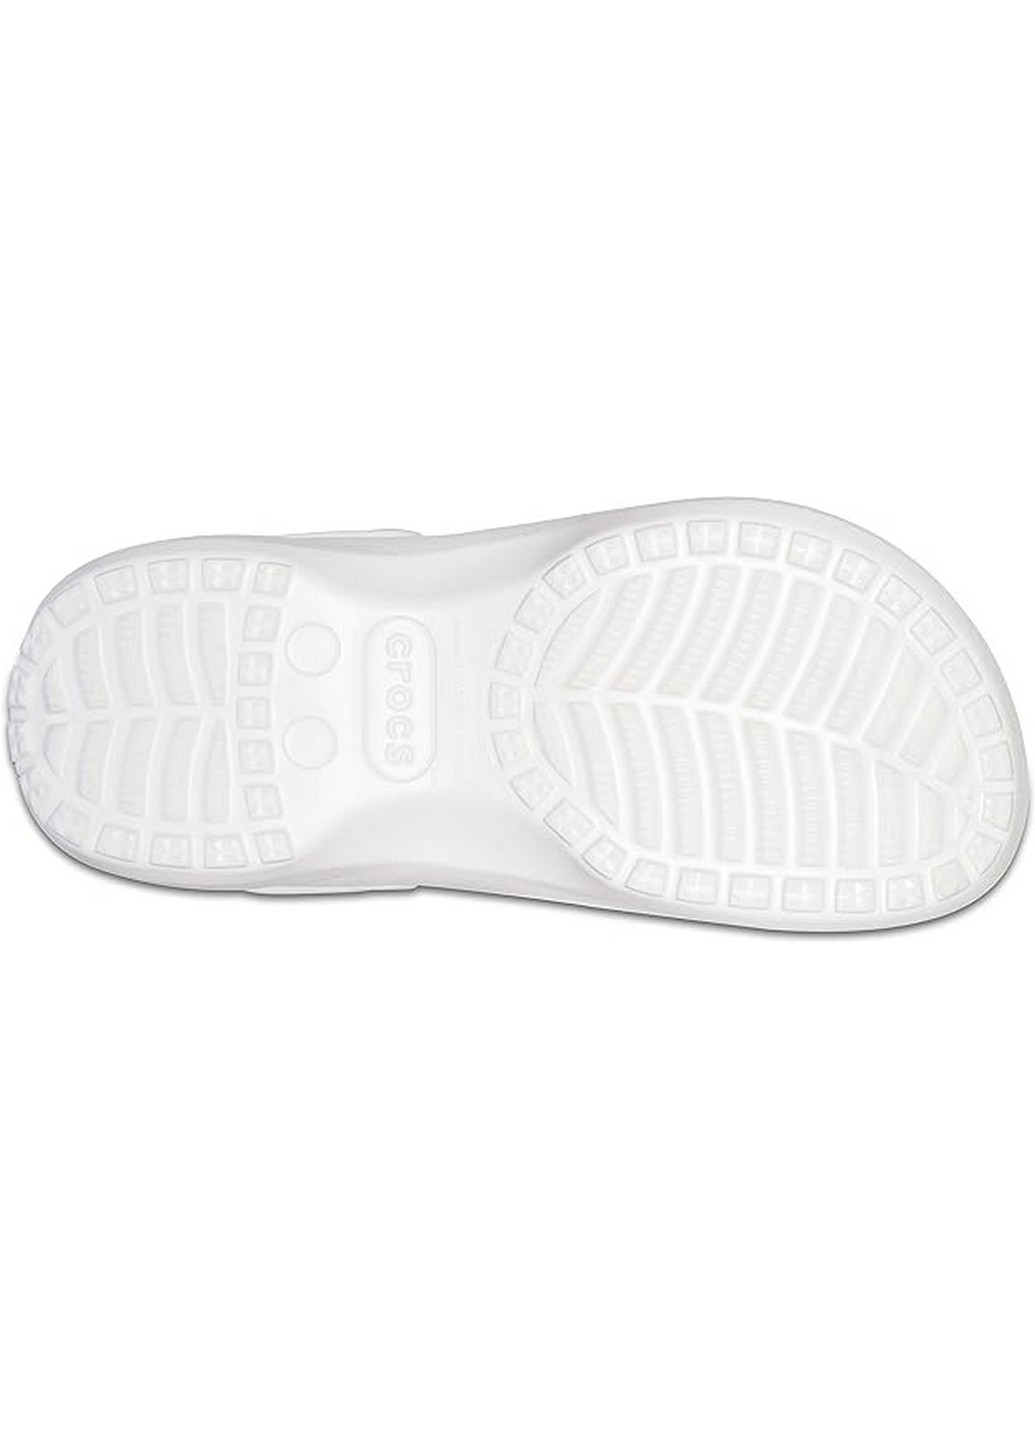 Белые кроксы на меху Crocs на платформе